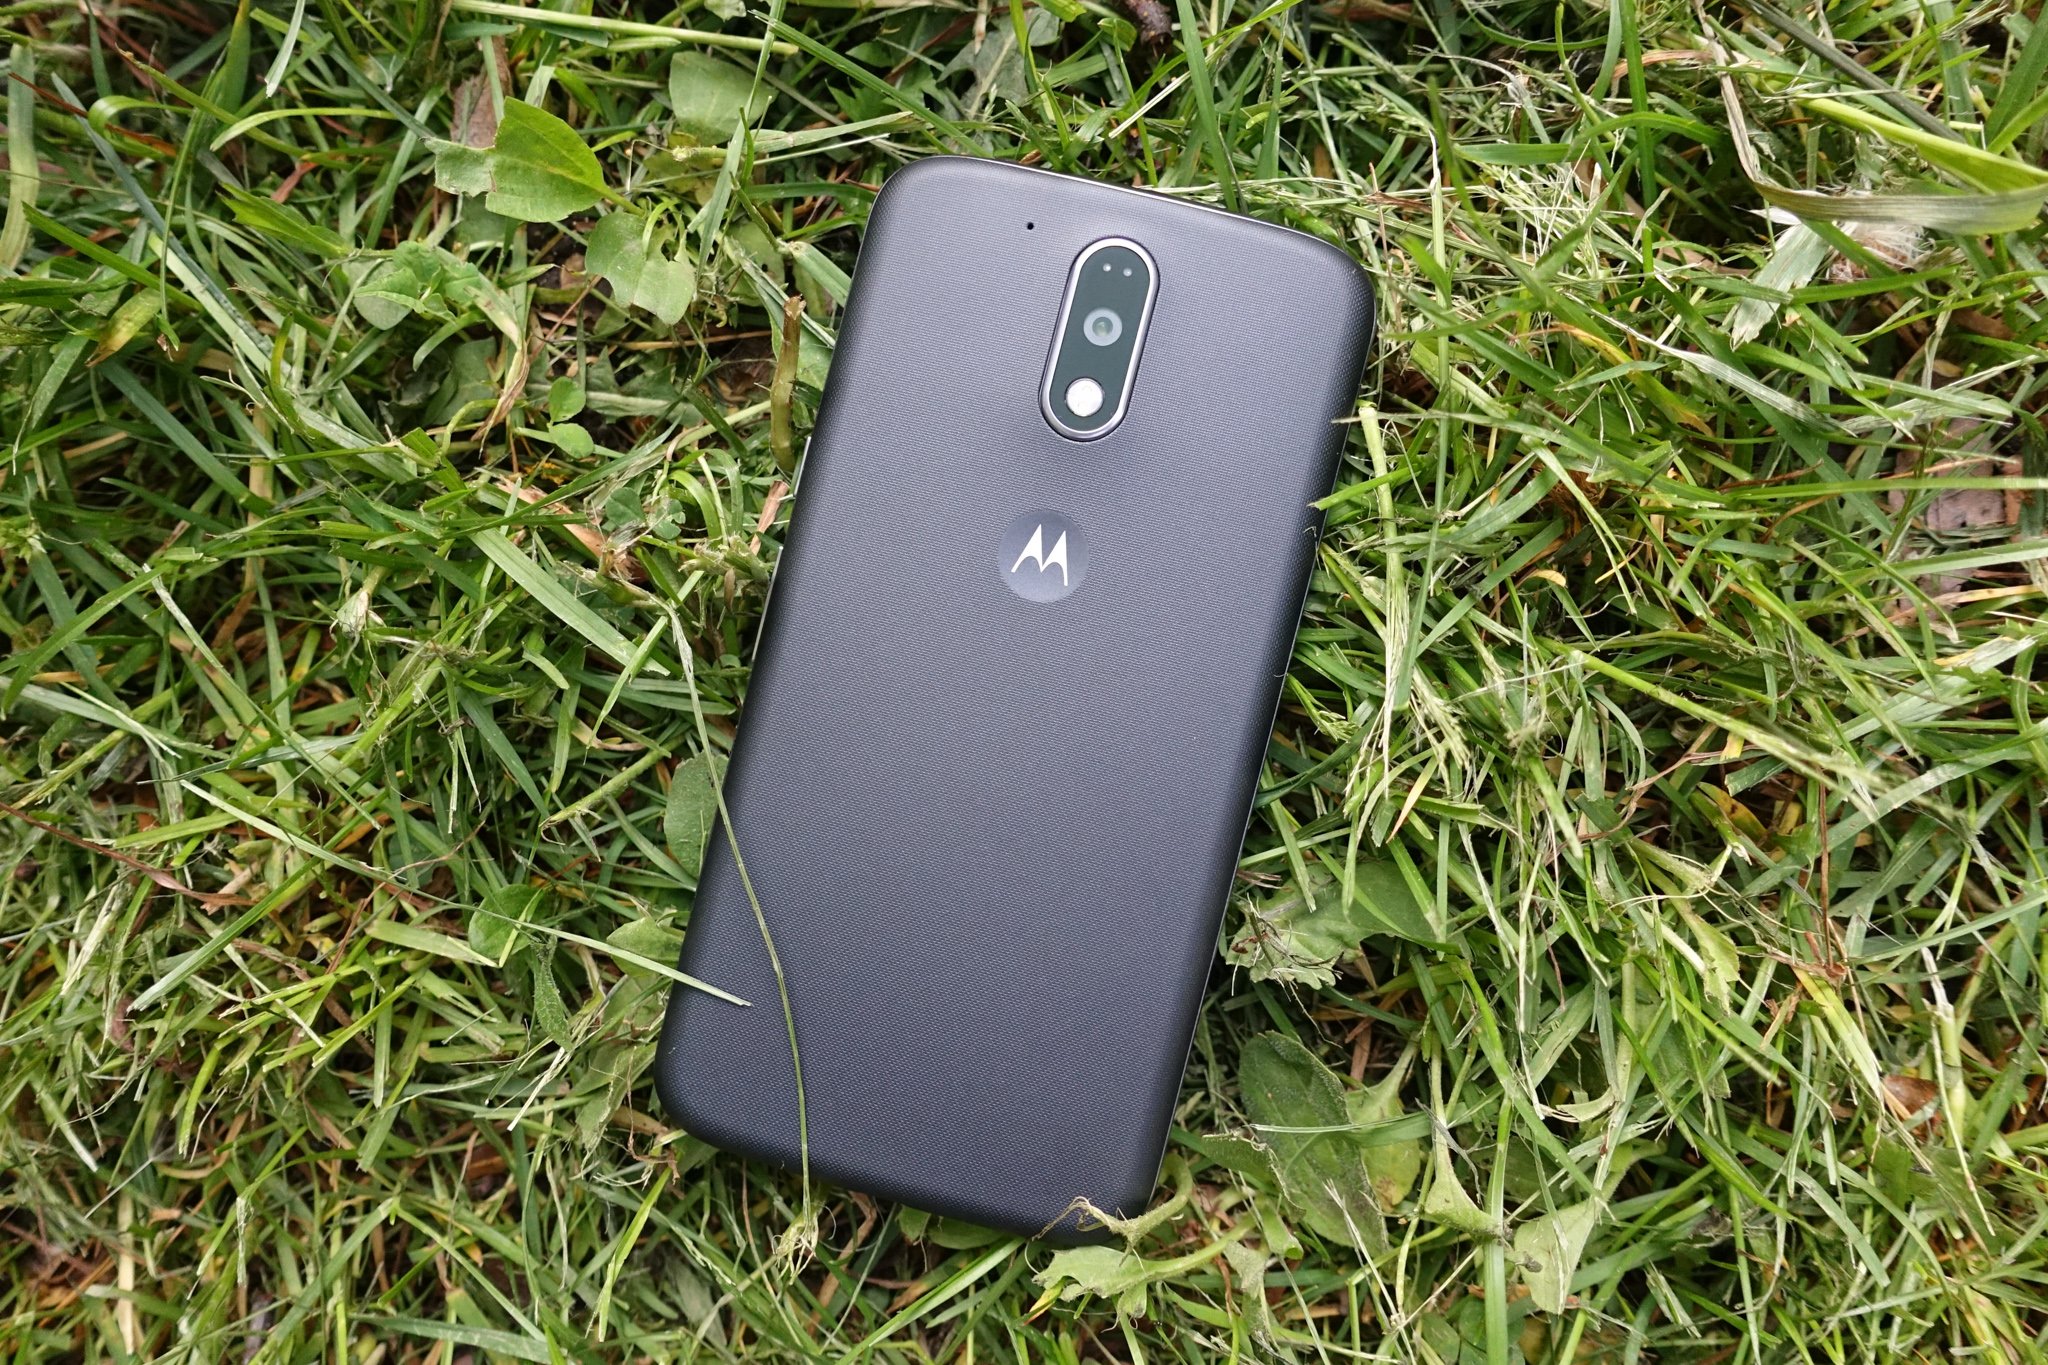 Trekken met de klok mee Inspecteren Moto G4 Plus review: A memorable upgrade | Android Central